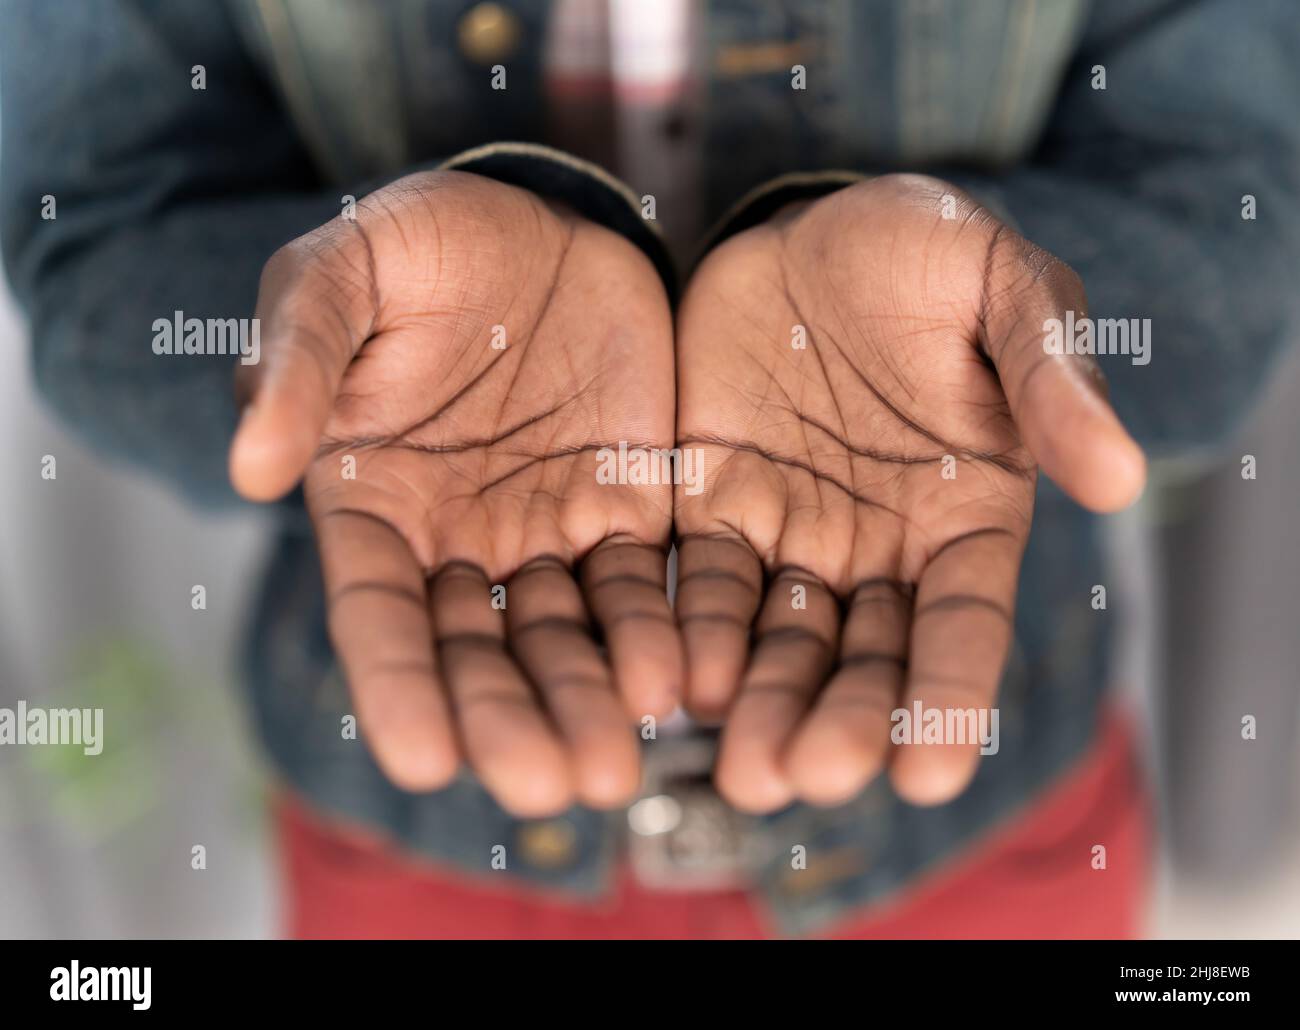 Nahaufnahme eines jungen afroamerikanischen Mannes mit Jeansjacke. Bettelhände eines armen Mannes Konzept. Junger afroamerikanischer Mann mit ausgestreckten Händen bettelt um Geld für das Leben. Stockfoto